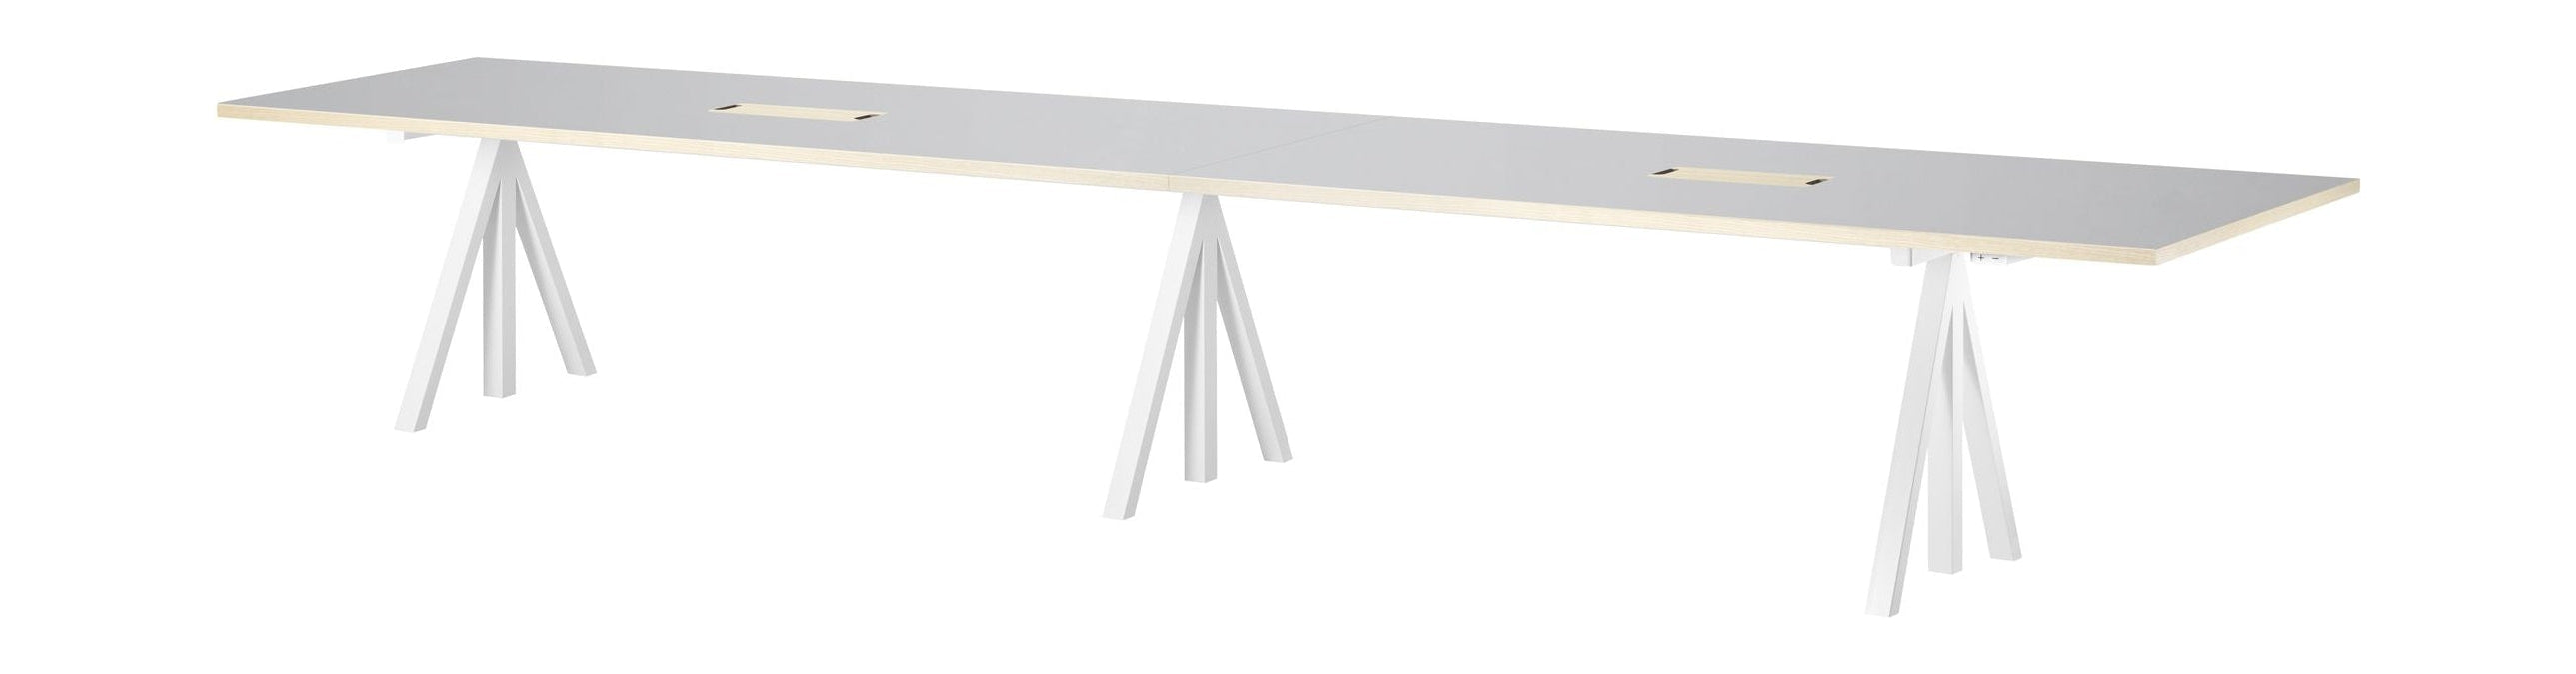 Streng møbelhøyde justerbar konferansetabell 90x180 cm, lysegrå linoleum